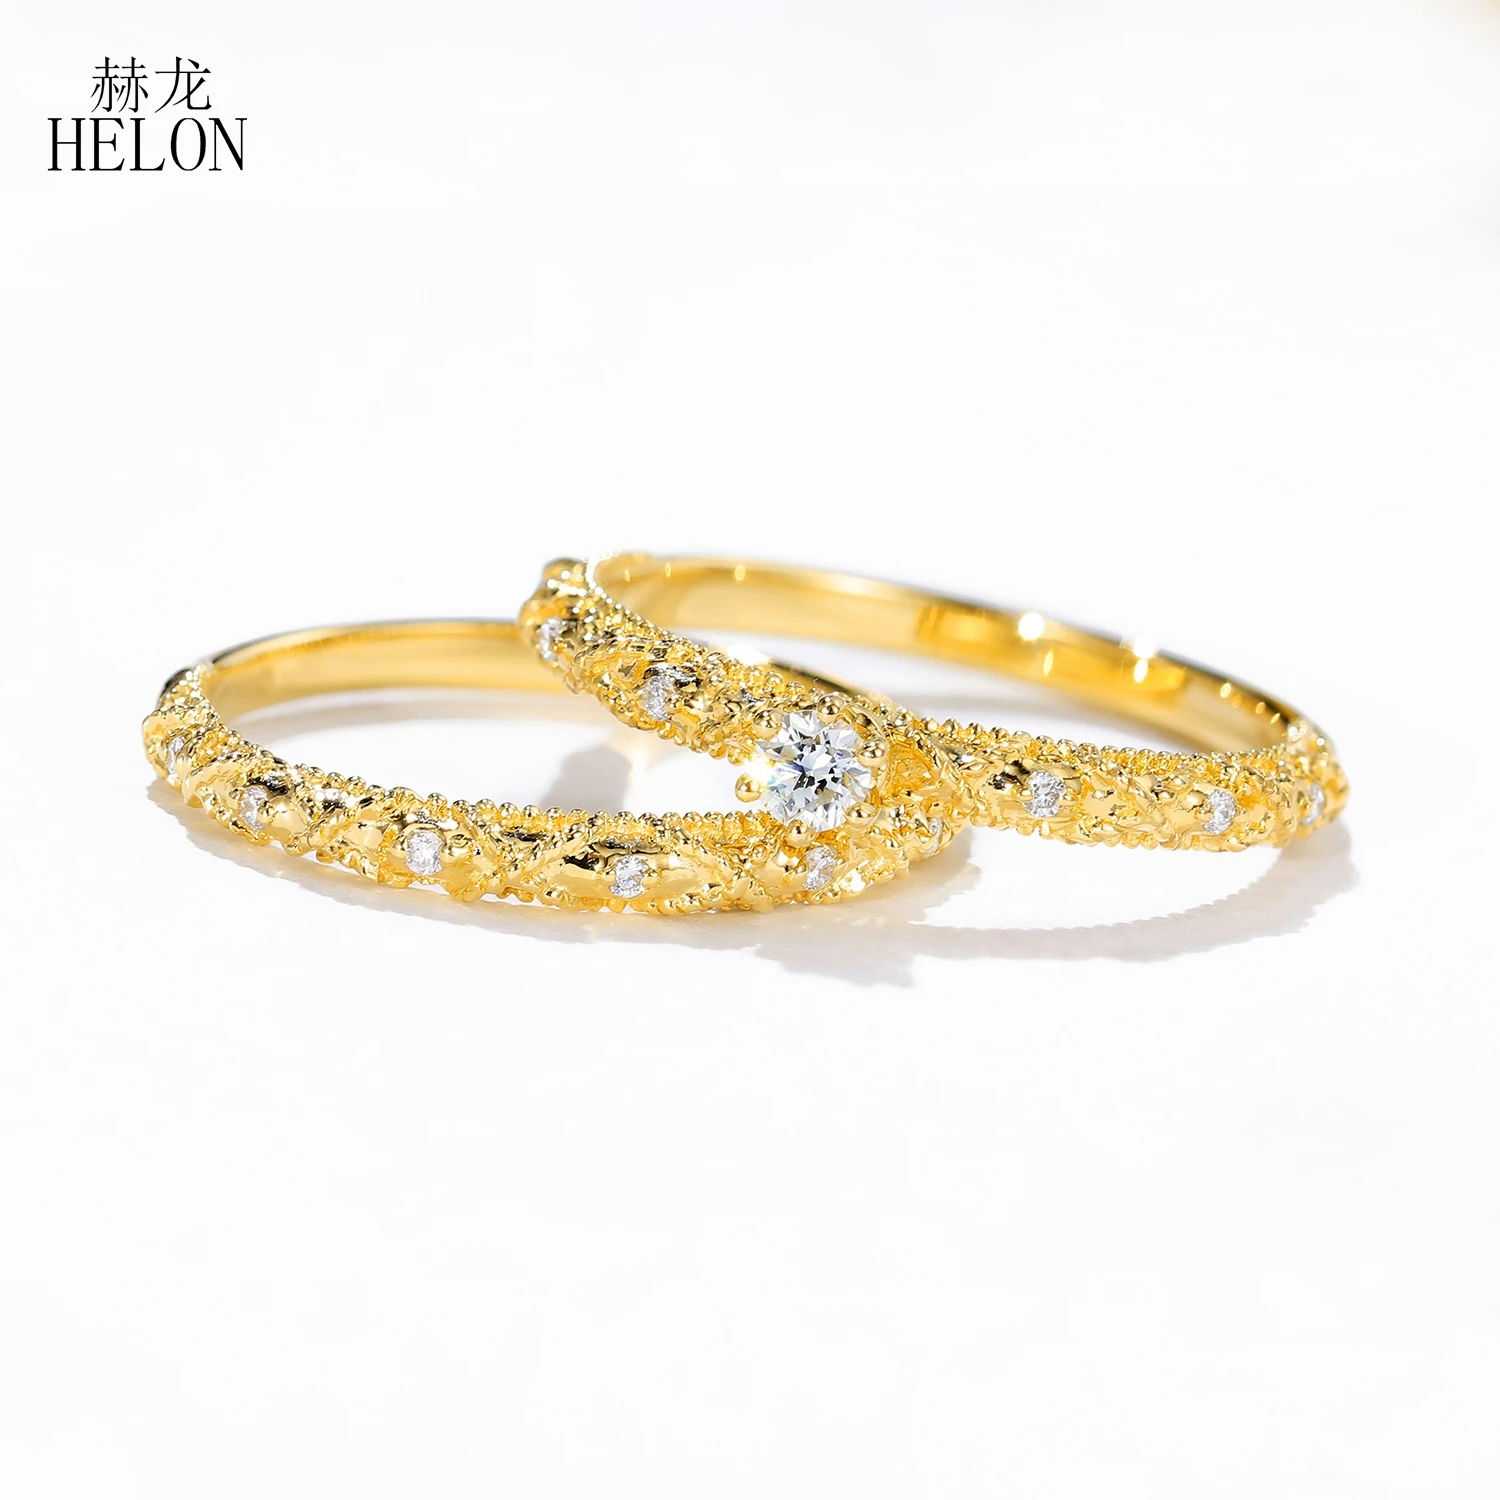 HELON Solid 18K AU750 желтое золото 0.13ct натуральный настоящий алмаз кольцо для женщин алмаз свадьба юбилей группа Идеально ювелирные изделия